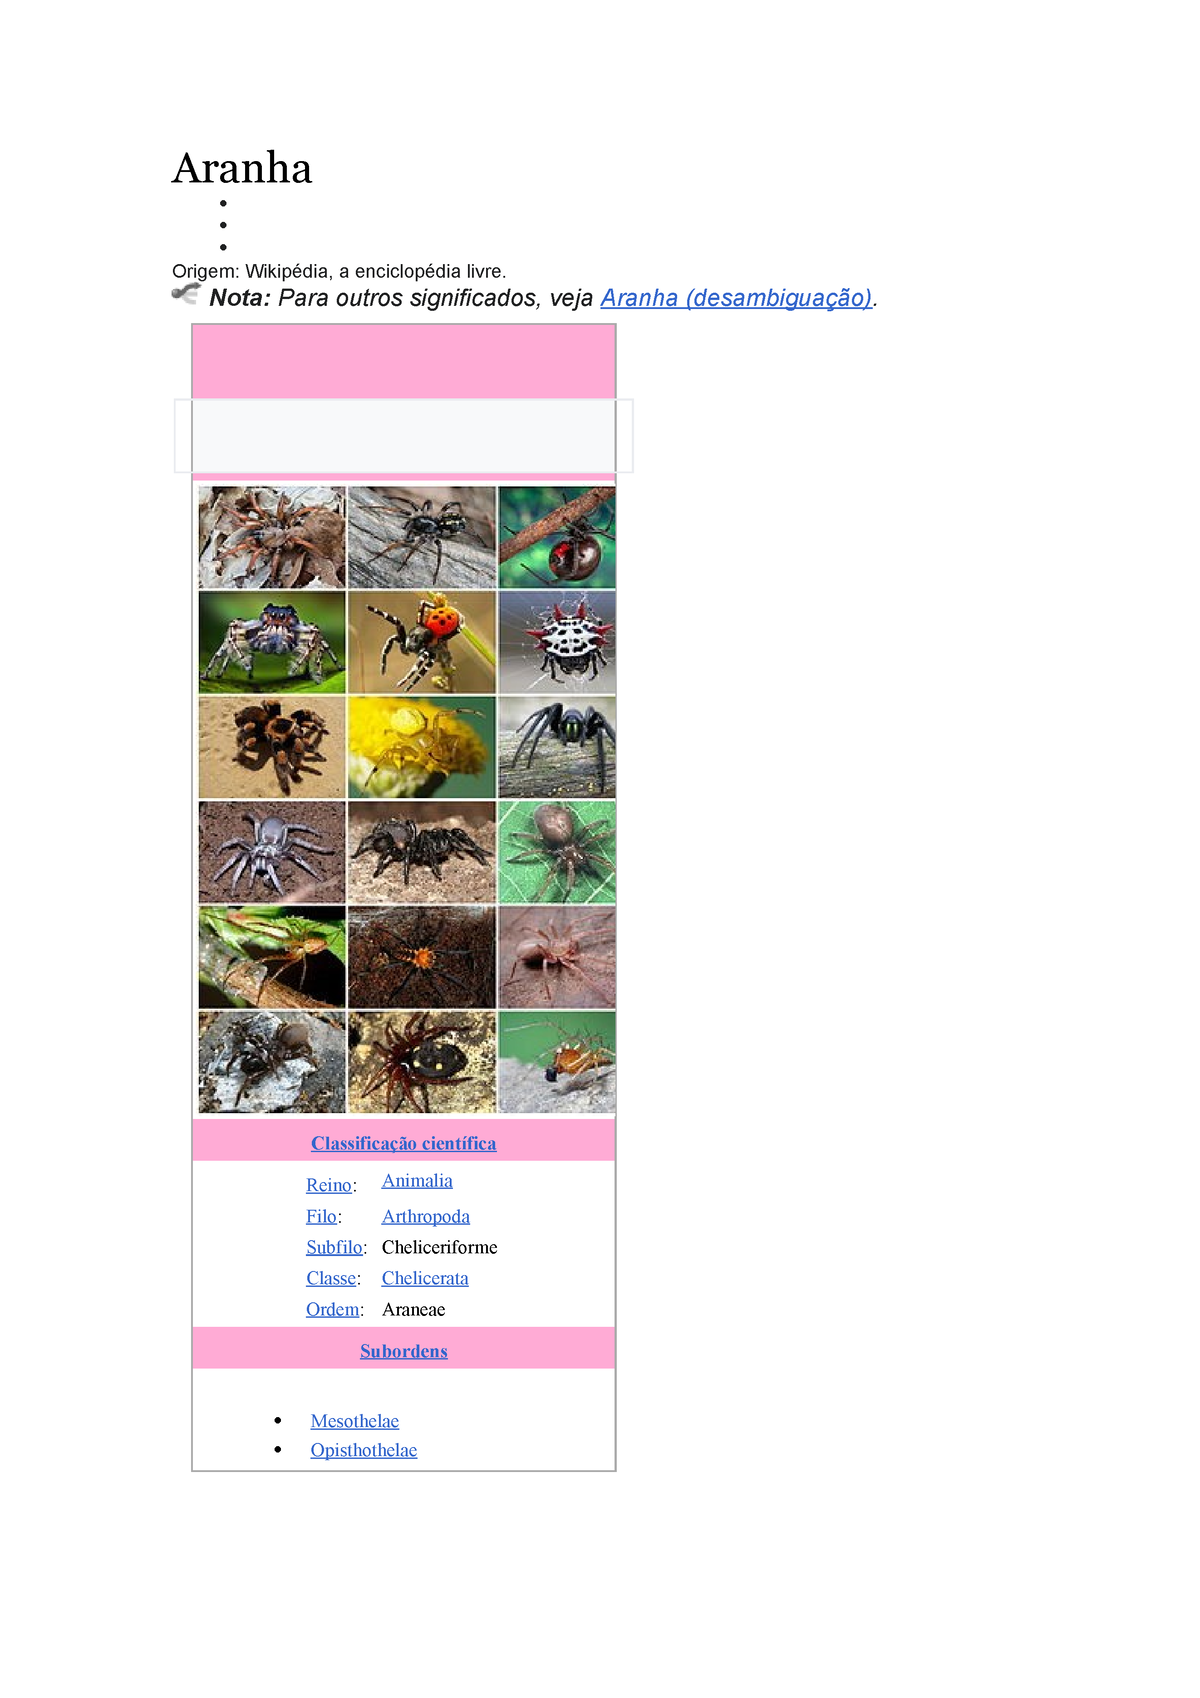 Homem-Aranha 3 – Wikipédia, a enciclopédia livre